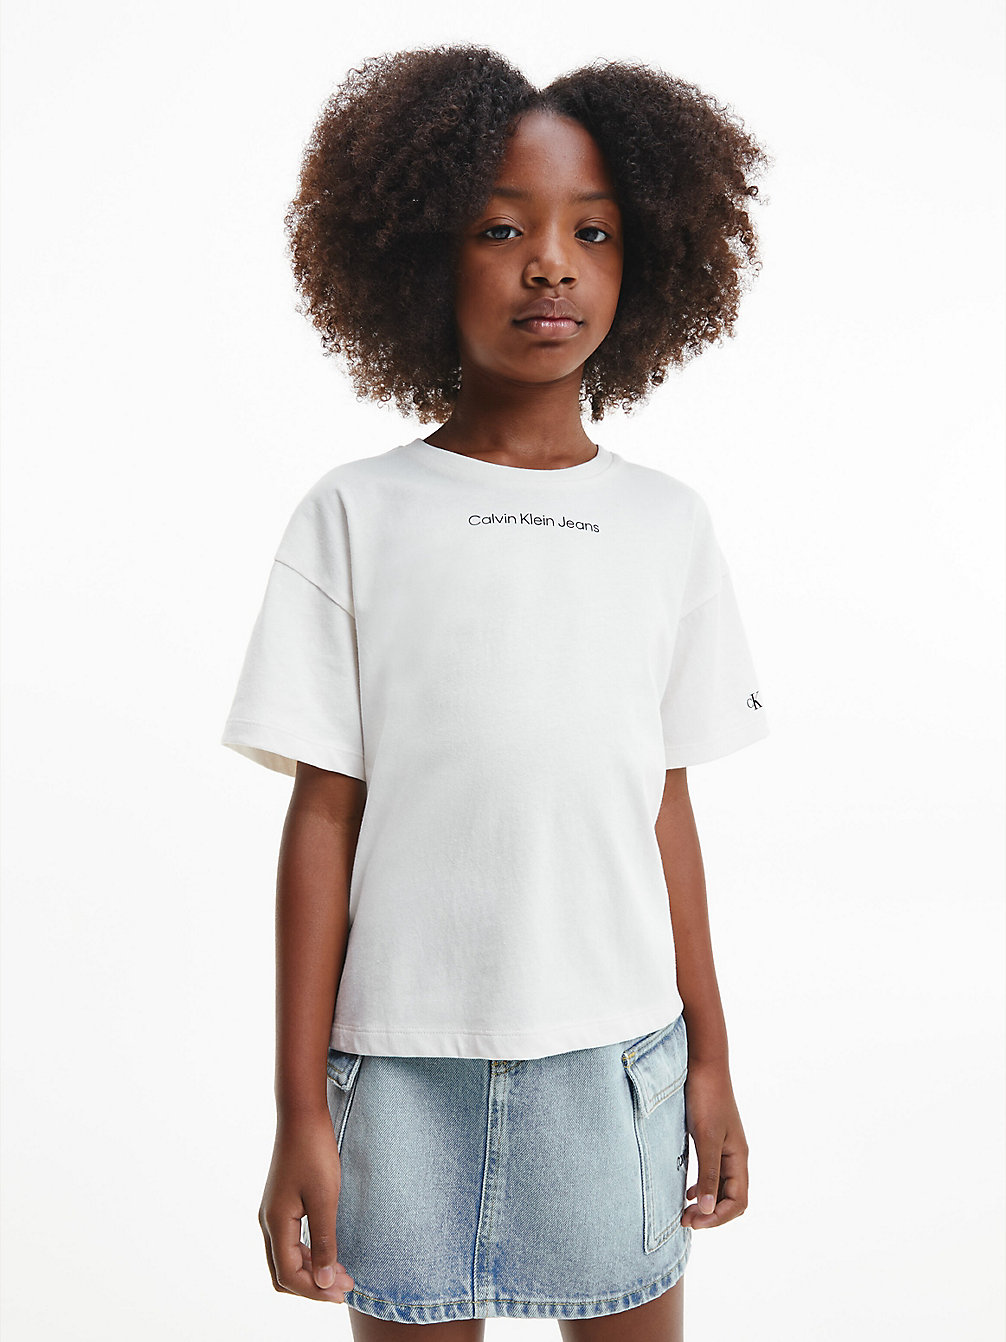 IVORY > Kastiges T-Shirt Aus Bio-Baumwolle > undefined girls - Calvin Klein